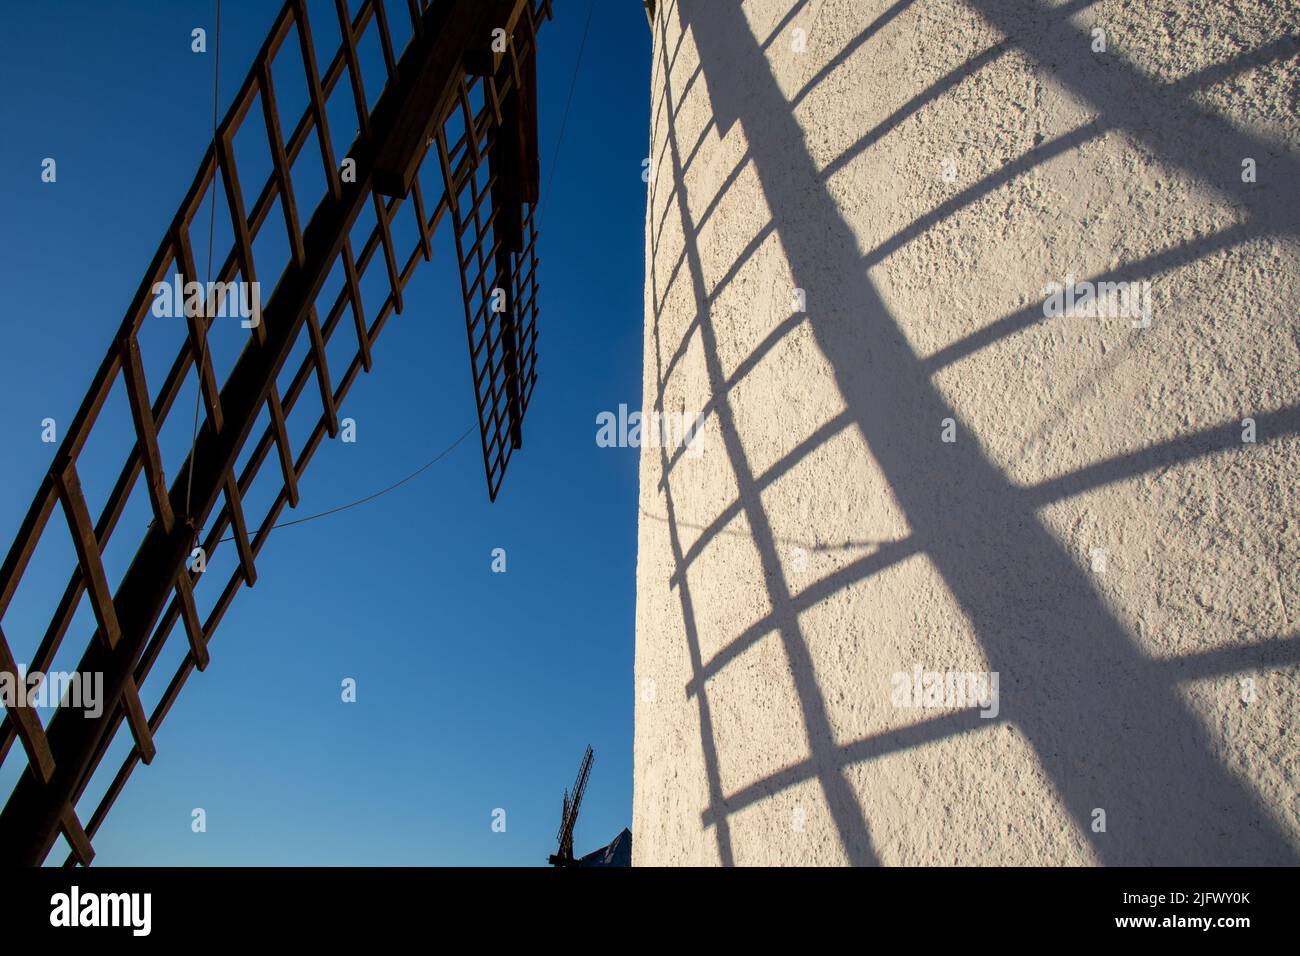 Primer plano de las aspas de un molino de viento y su sombra en el molino, cielo azul, Campo de Criptana, España Stockfoto